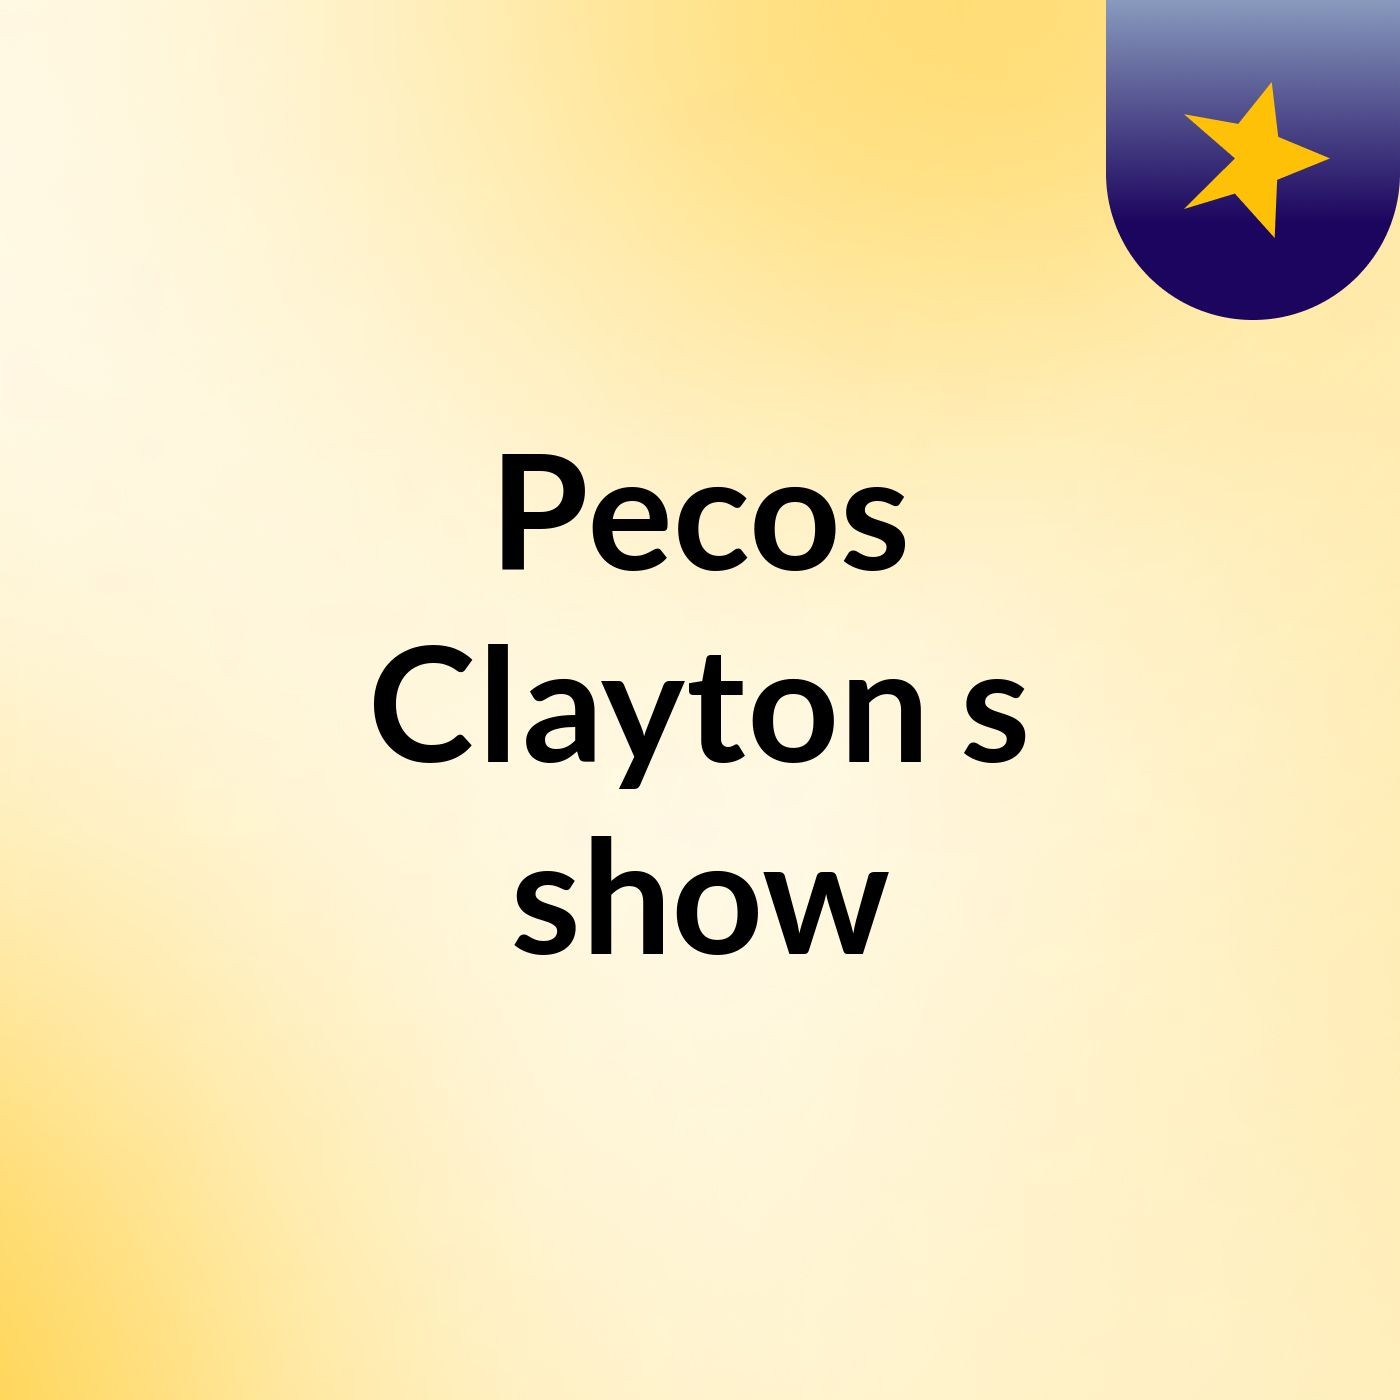 Pecos Clayton's show